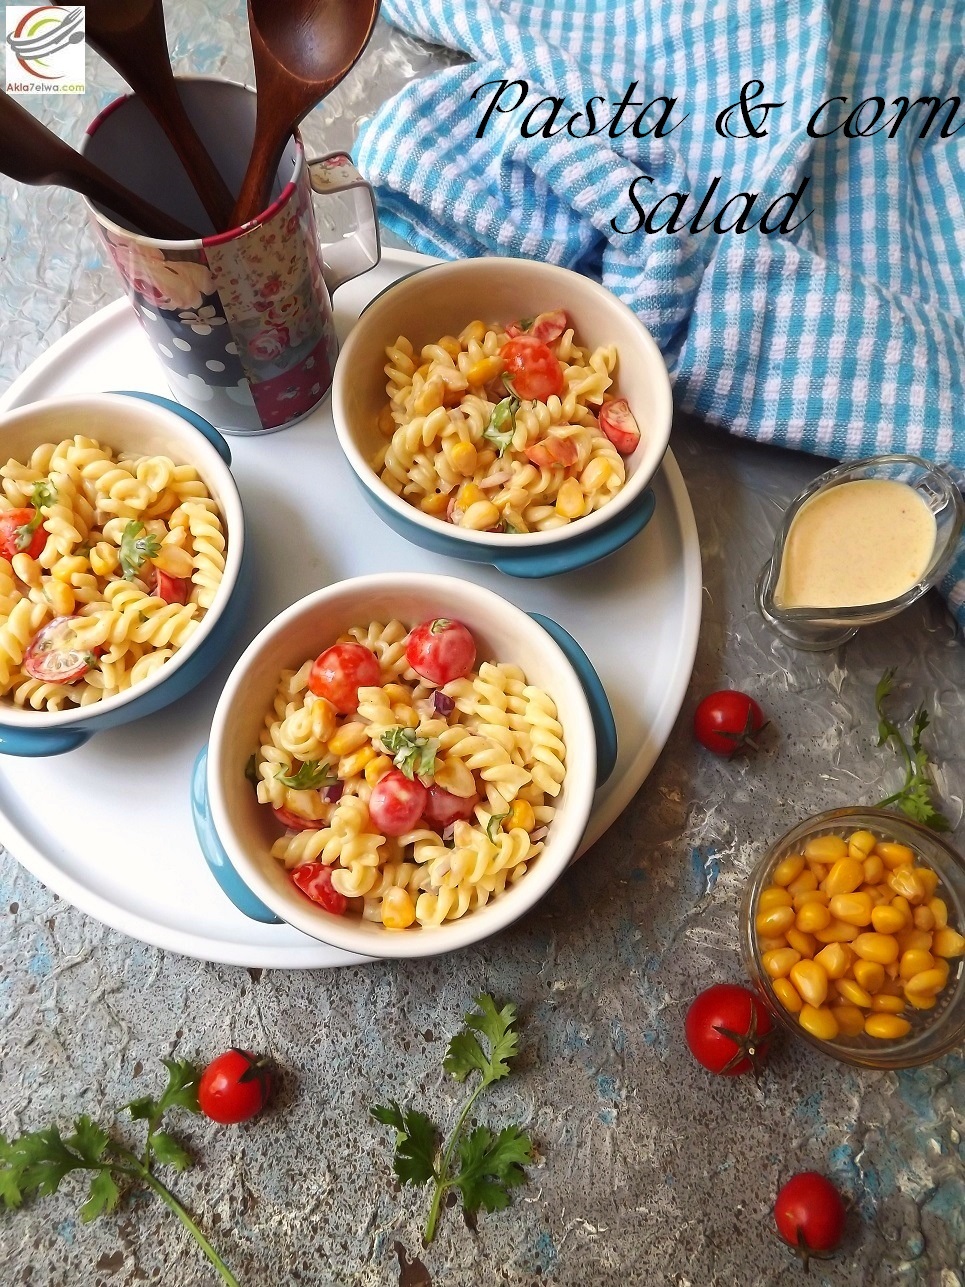 سلطة الباستا و الذرة pasta &corn salad